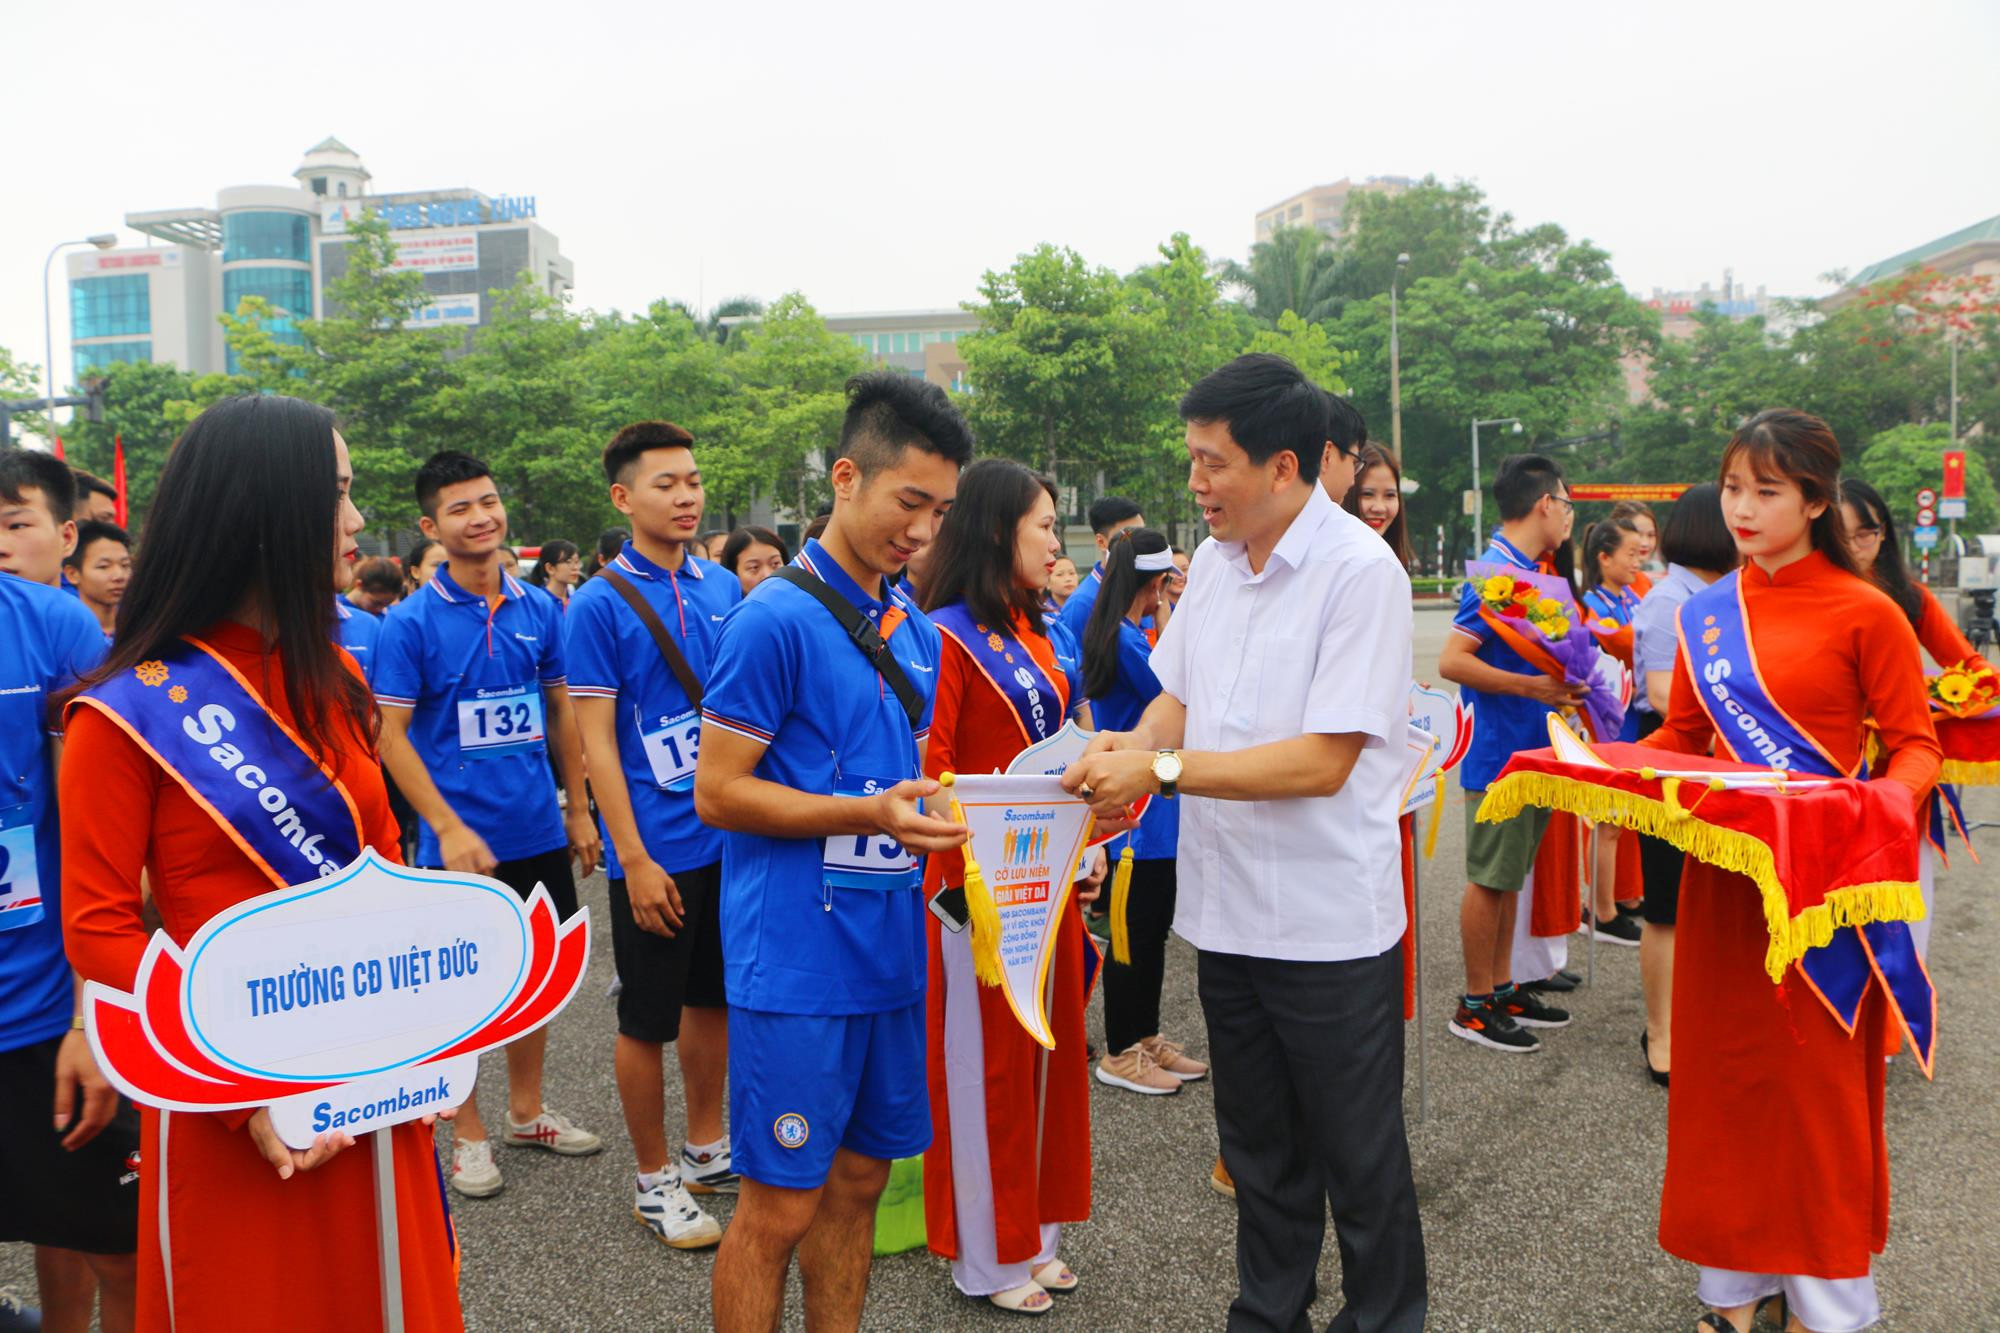 Đồng chí Kha Văn Tám, Phó Ban Tuyên giáo Tỉnh ủy tặng hoa và Cờ lưu niệm cho các đội tham gia giải Việt dã. Ảnh: Nguyễn Hải